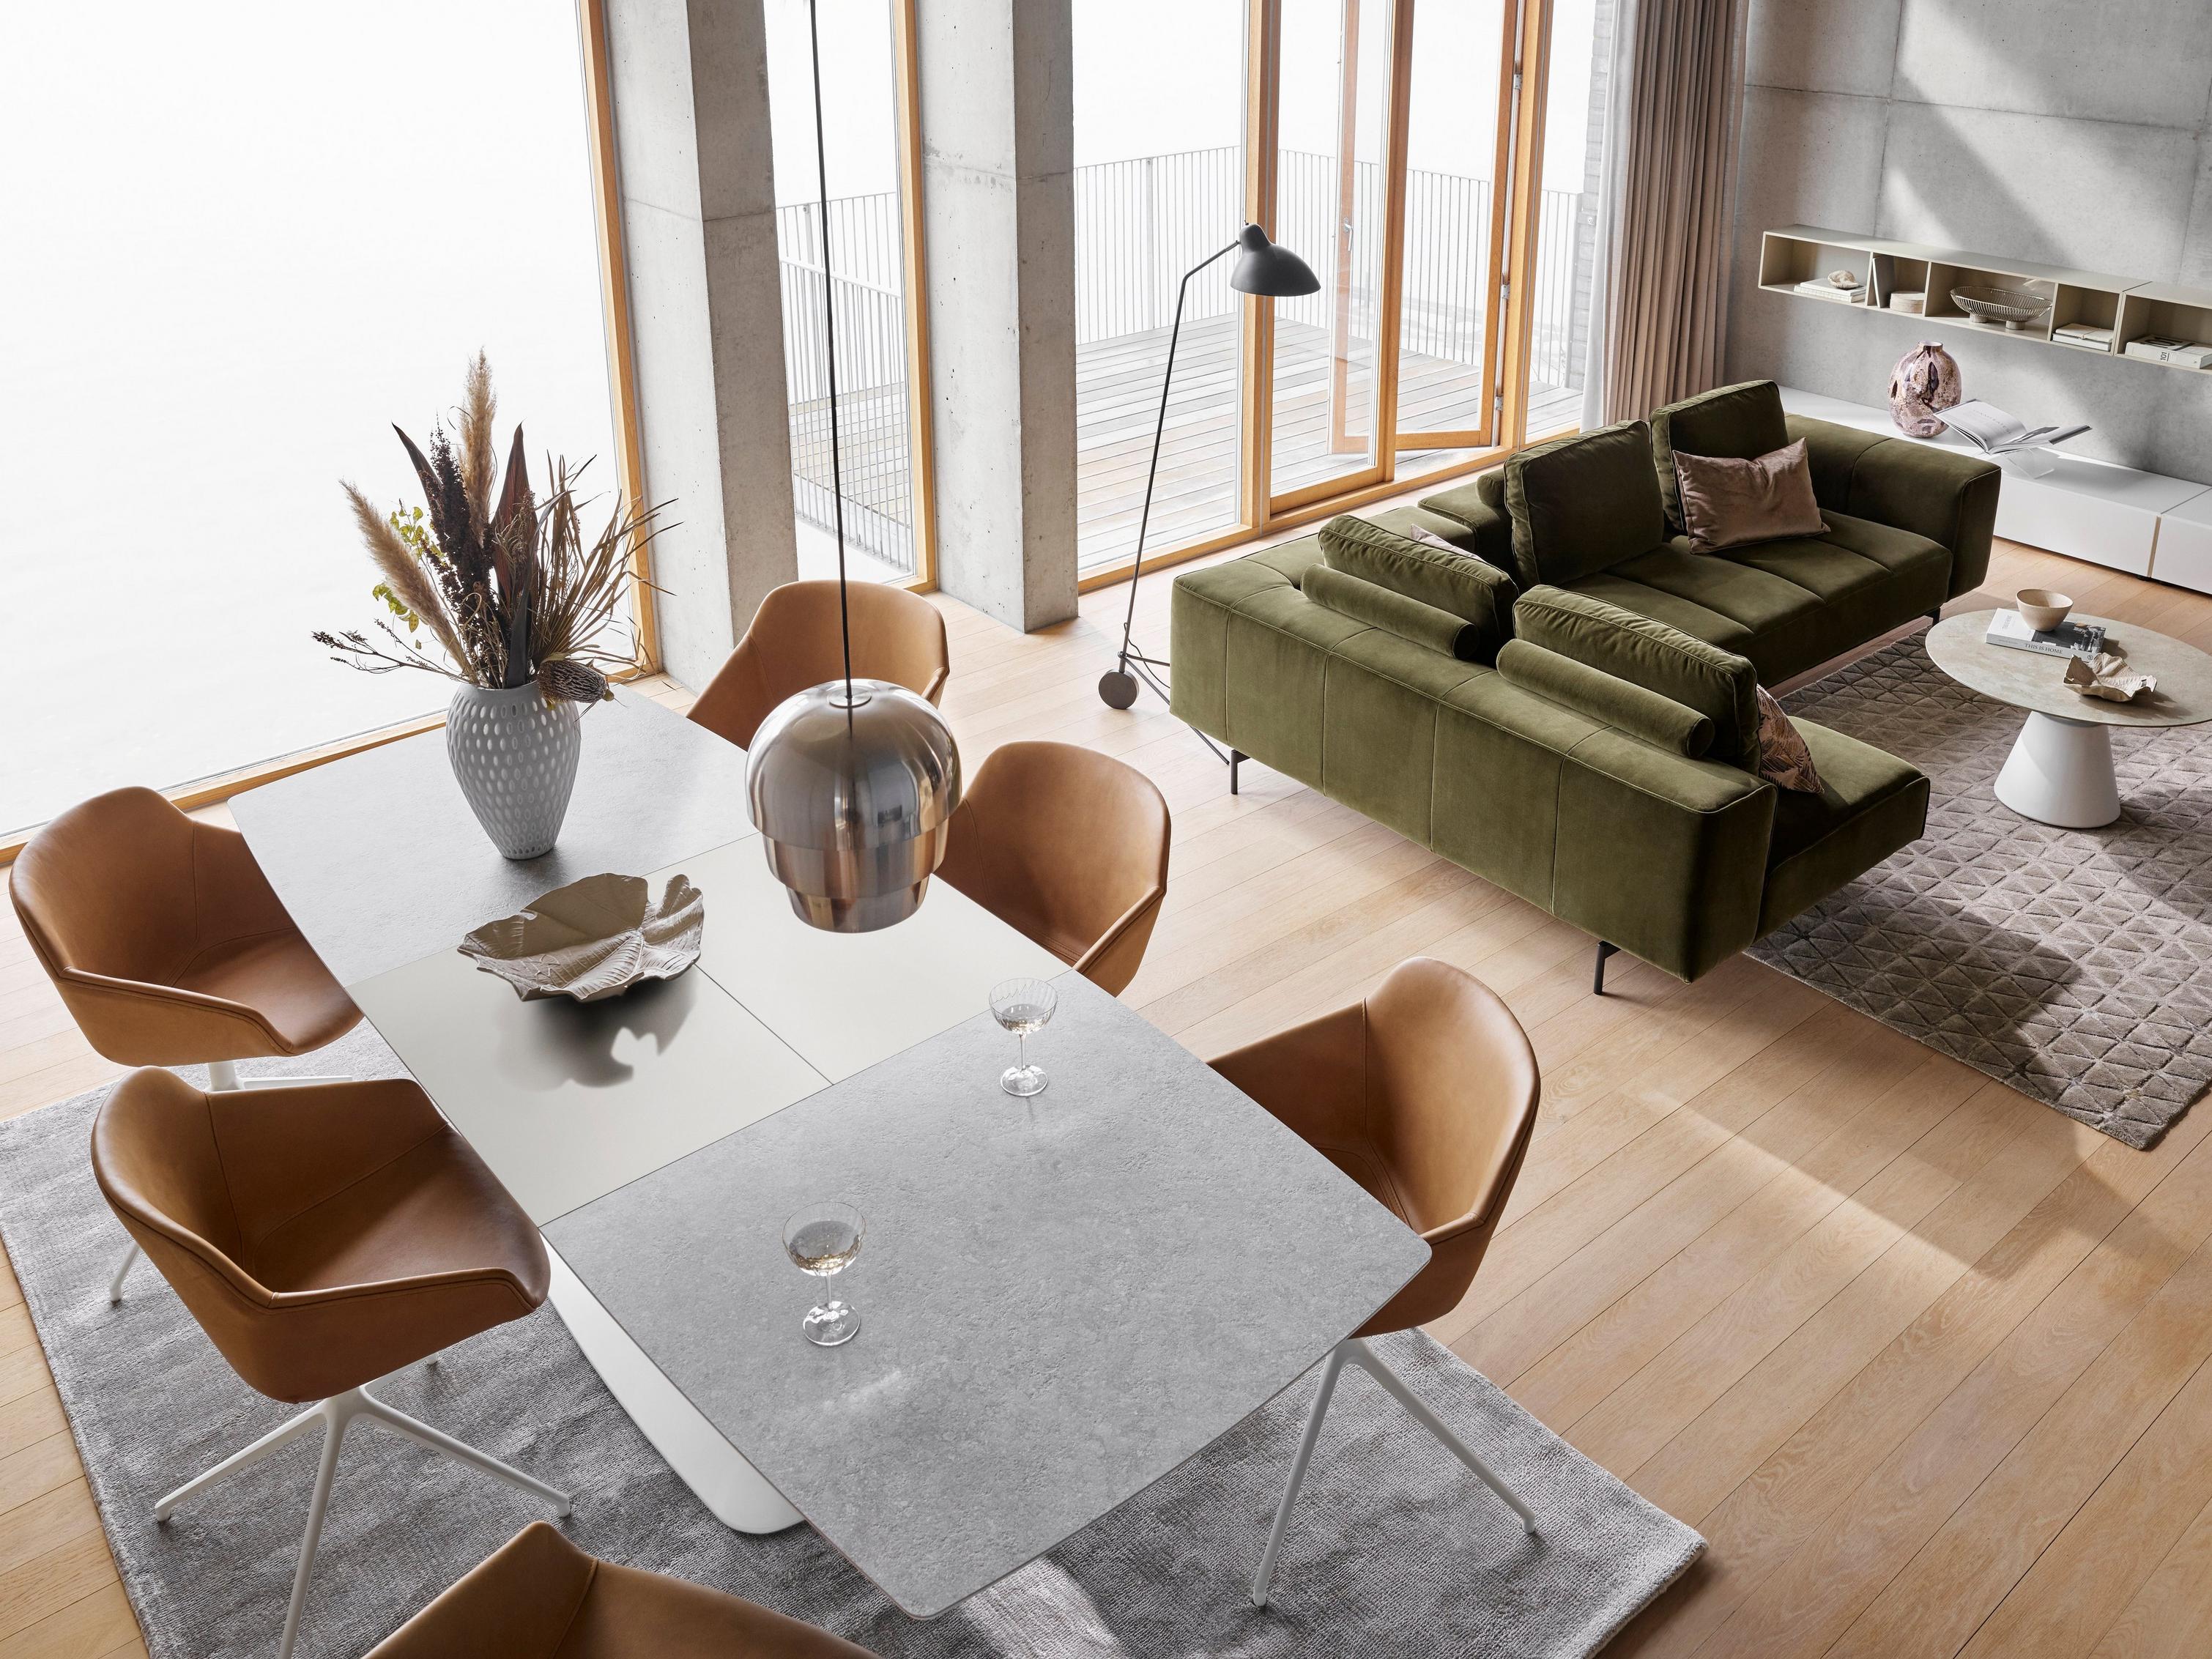 橄榄绿天鹅绒带躺卧式单元 Amsterdam 转角沙发，搭配 Alicante 餐桌、Madrid 咖啡桌和琥珀色 York 皮革面料 Vienna 椅。